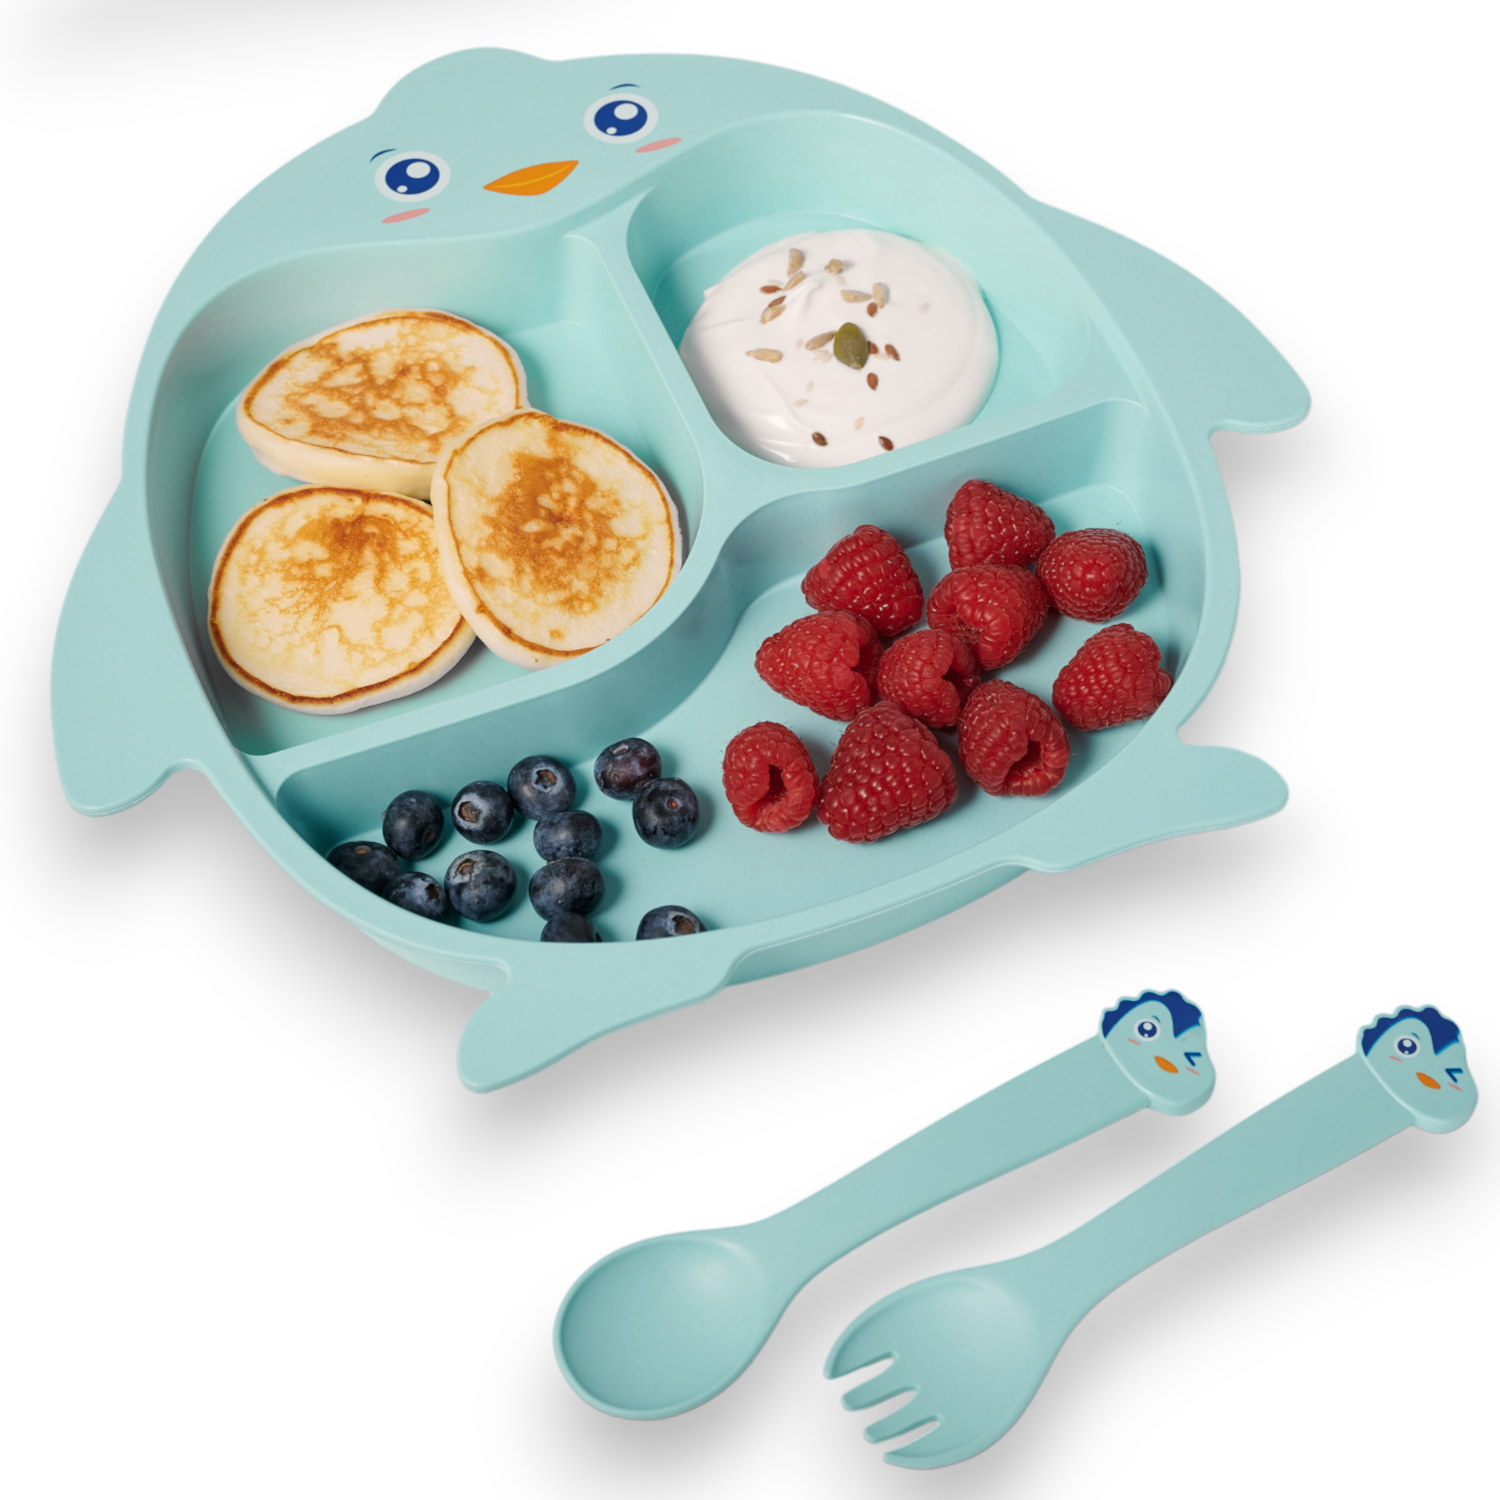 Детская посуда для кормления Добрый Филин Пингвинёнок тарелка, ложка, вилка, палочки детская посуда для кормления добрый филин медвежонок 4 предмета тарелка ложка вилка